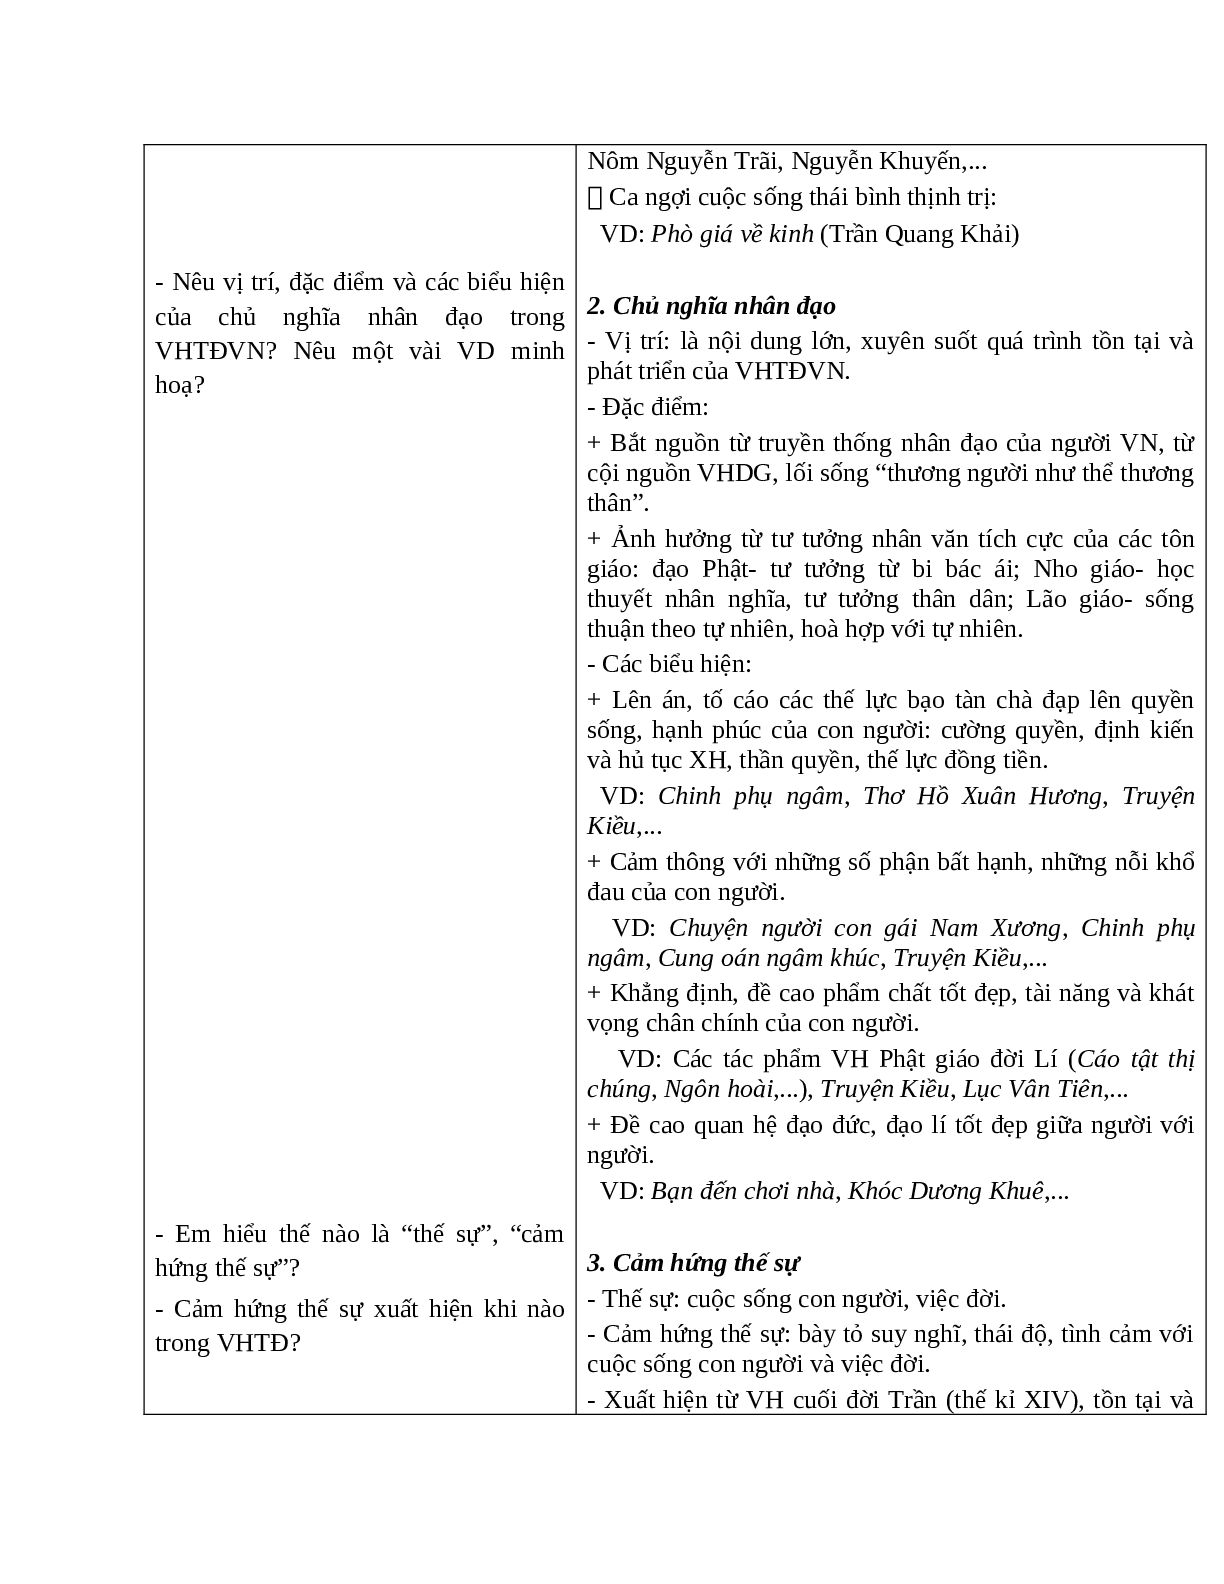 Giáo án Ngữ văn 10 tập 1 bài Khái quát văn học Việt Nam từ thế kỉ X đến hết thế kỉ XIX (tiết 2) mới nhất (trang 4)